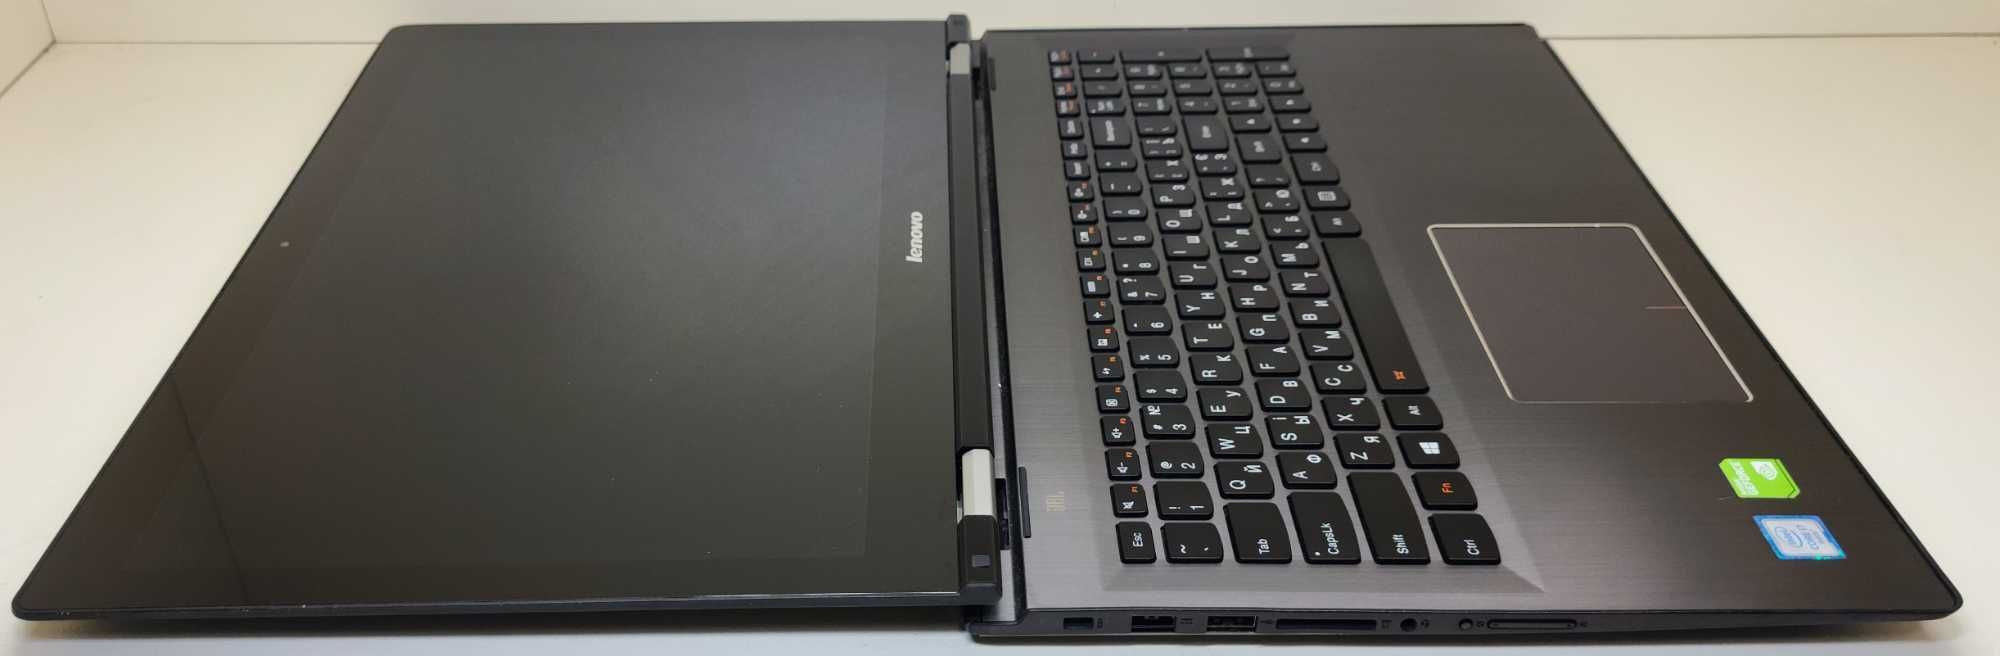 Ноутбук Lenovo Edge 2-1580 i7/8gb/240gb/nVidia 940M/15.6 FHD IPS Touch